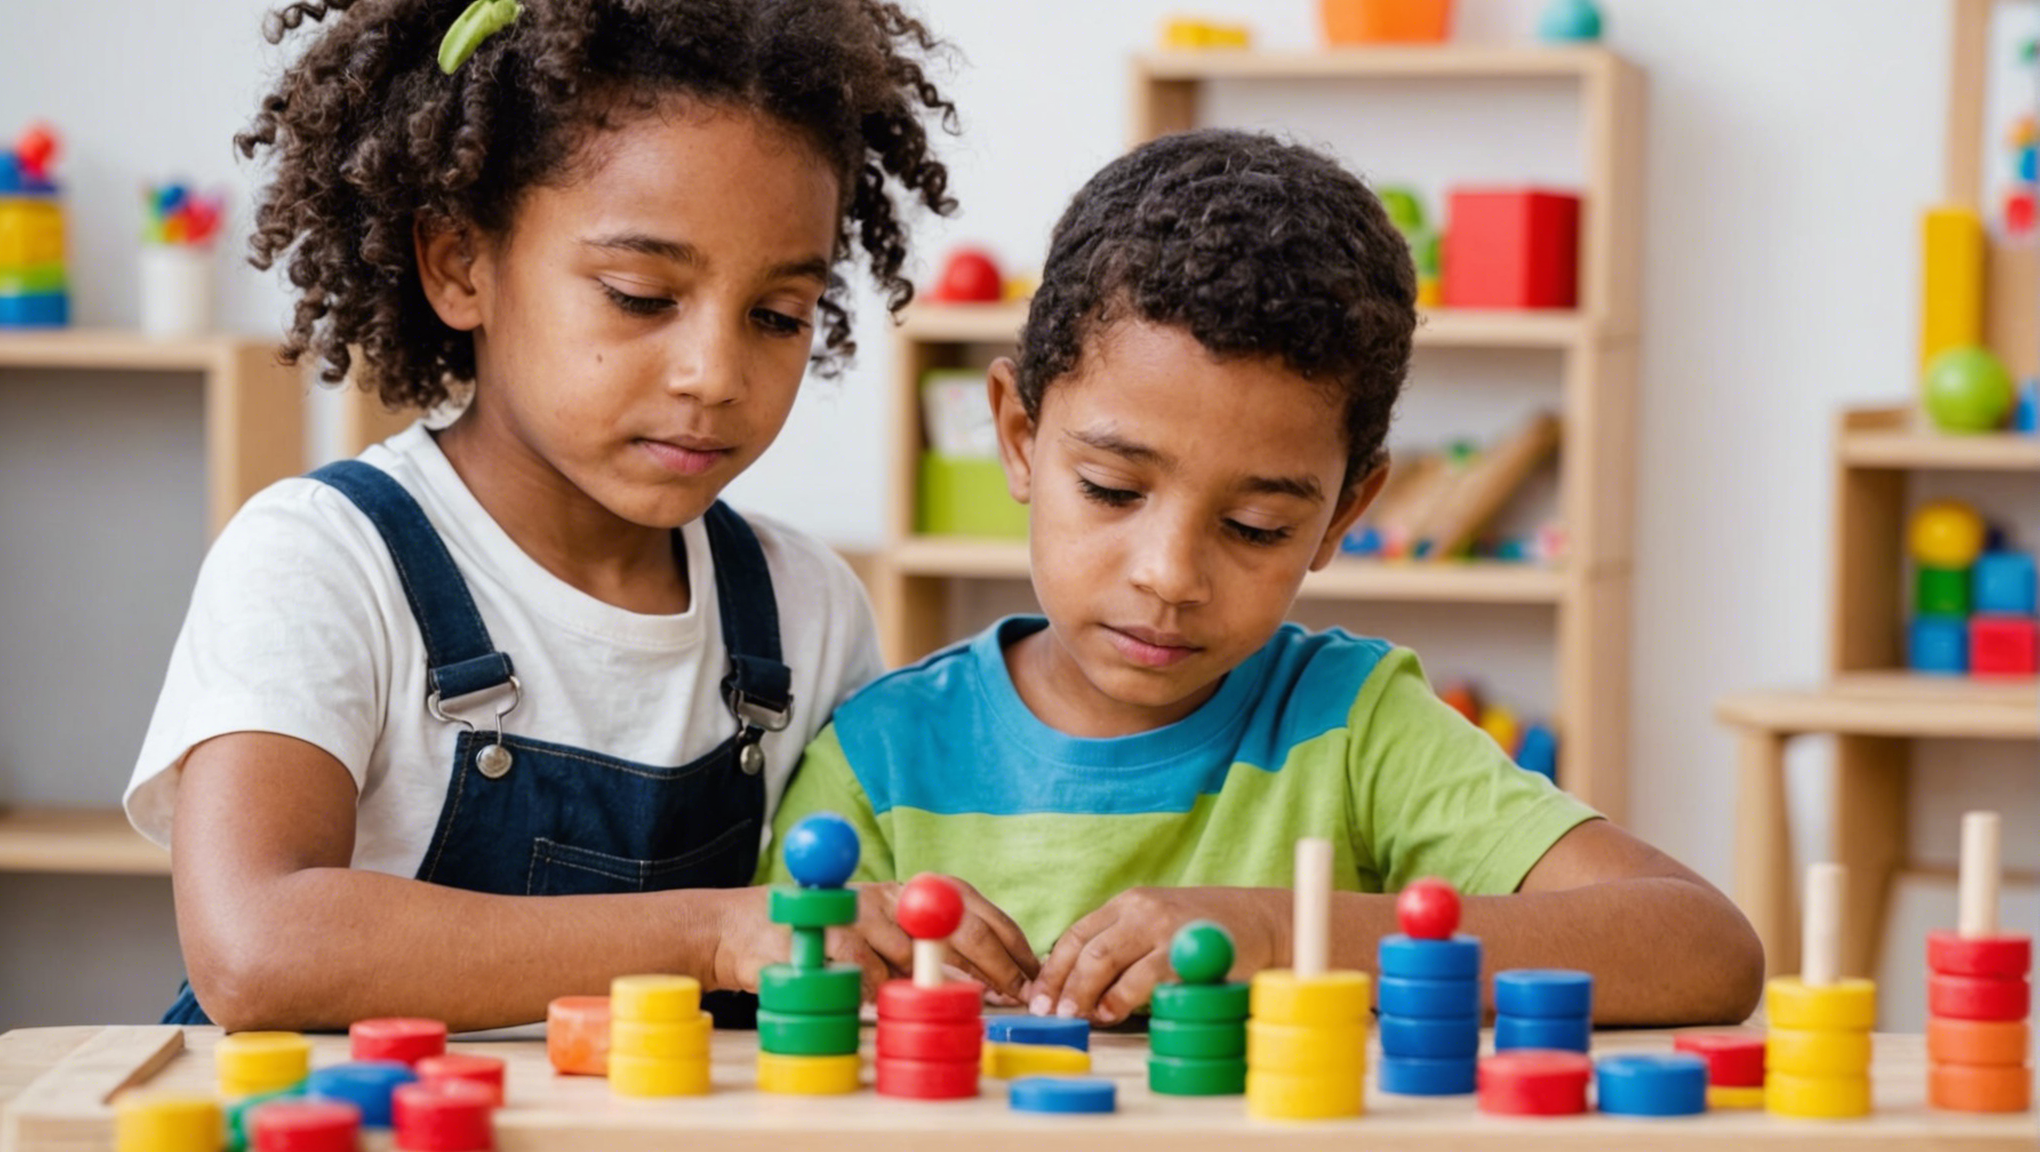 découvrez les différences et similitudes entre les approches pédagogiques de freinet et montessori pour mieux comprendre leur impact sur l'éducation.